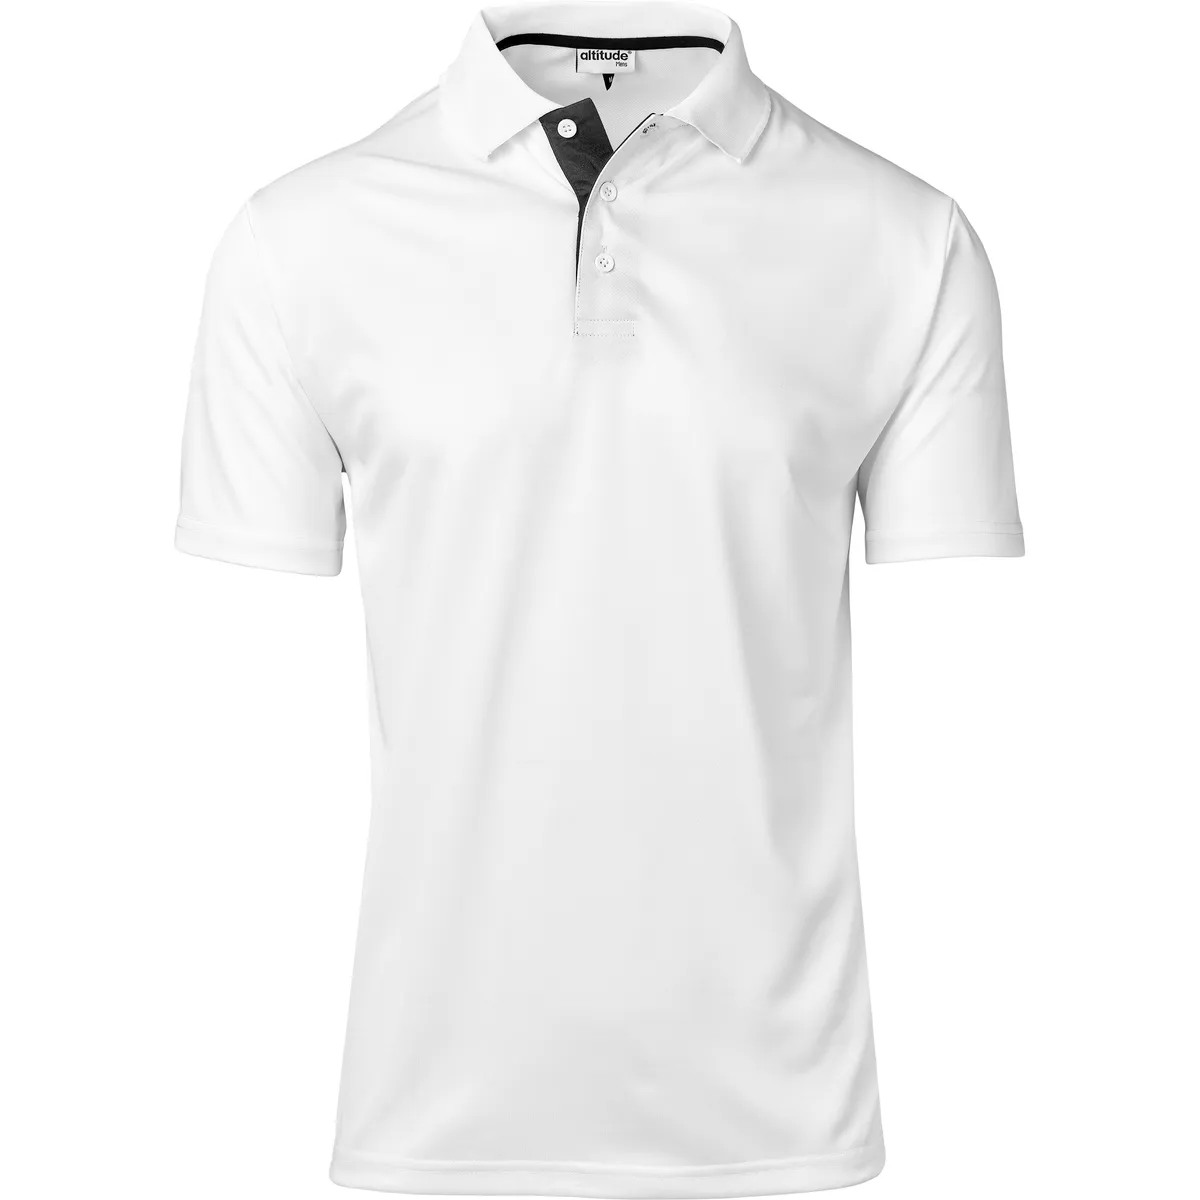 Mens Tournament Golf Shirt | Creative Brands